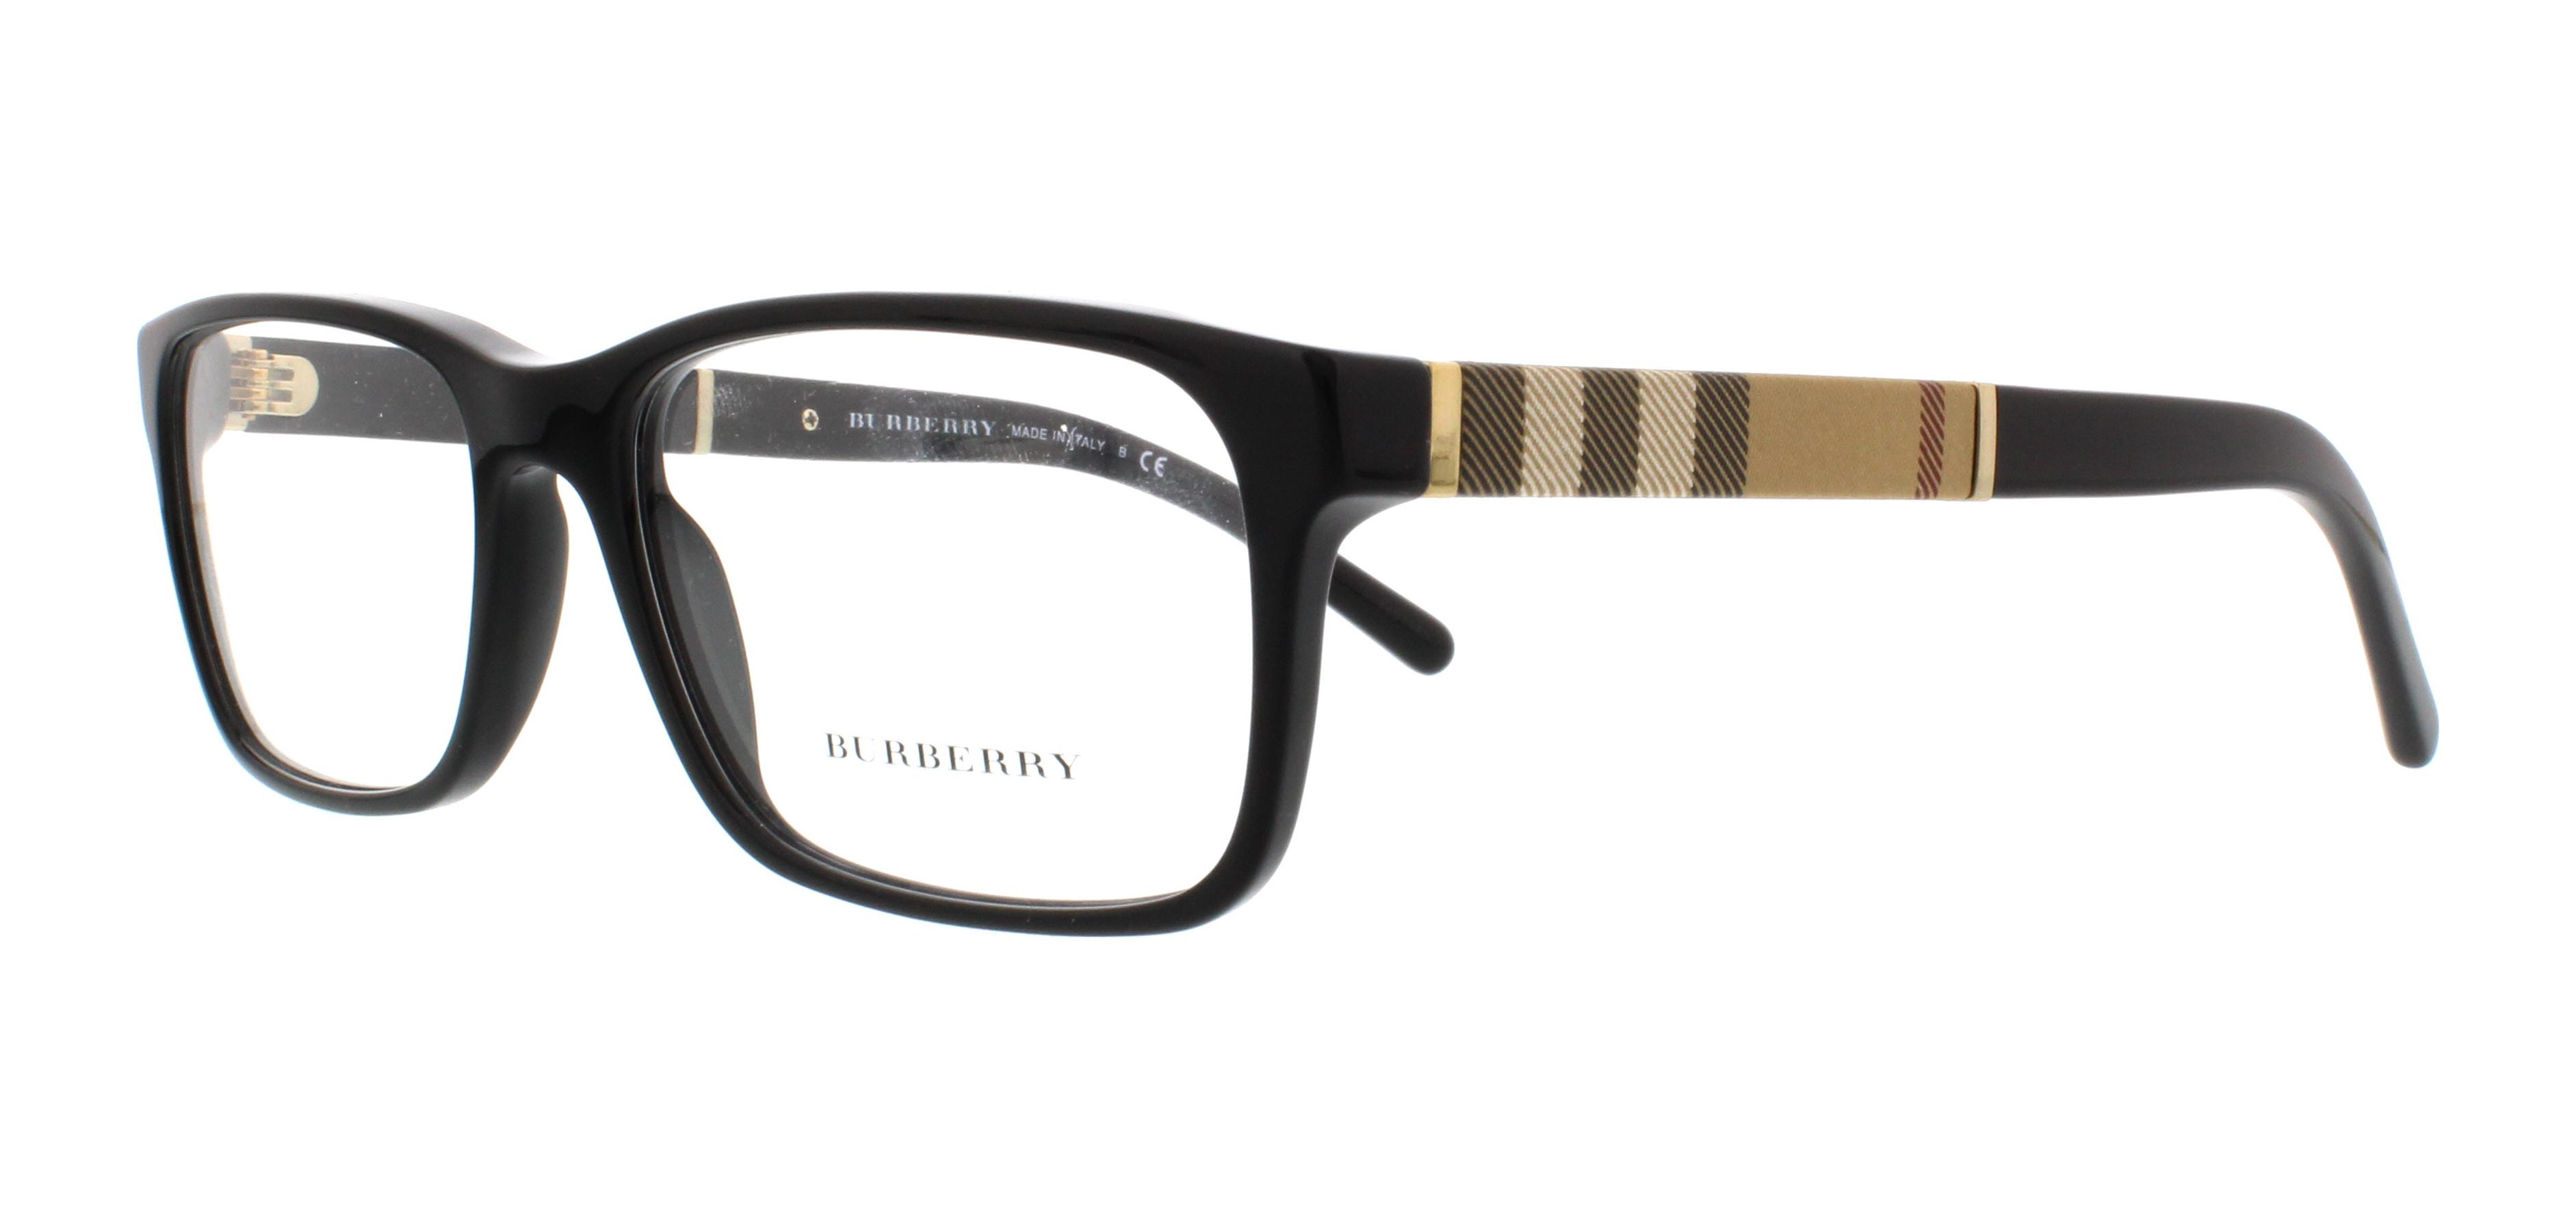 Eyeglasses, Men - Designer Frames Outlet